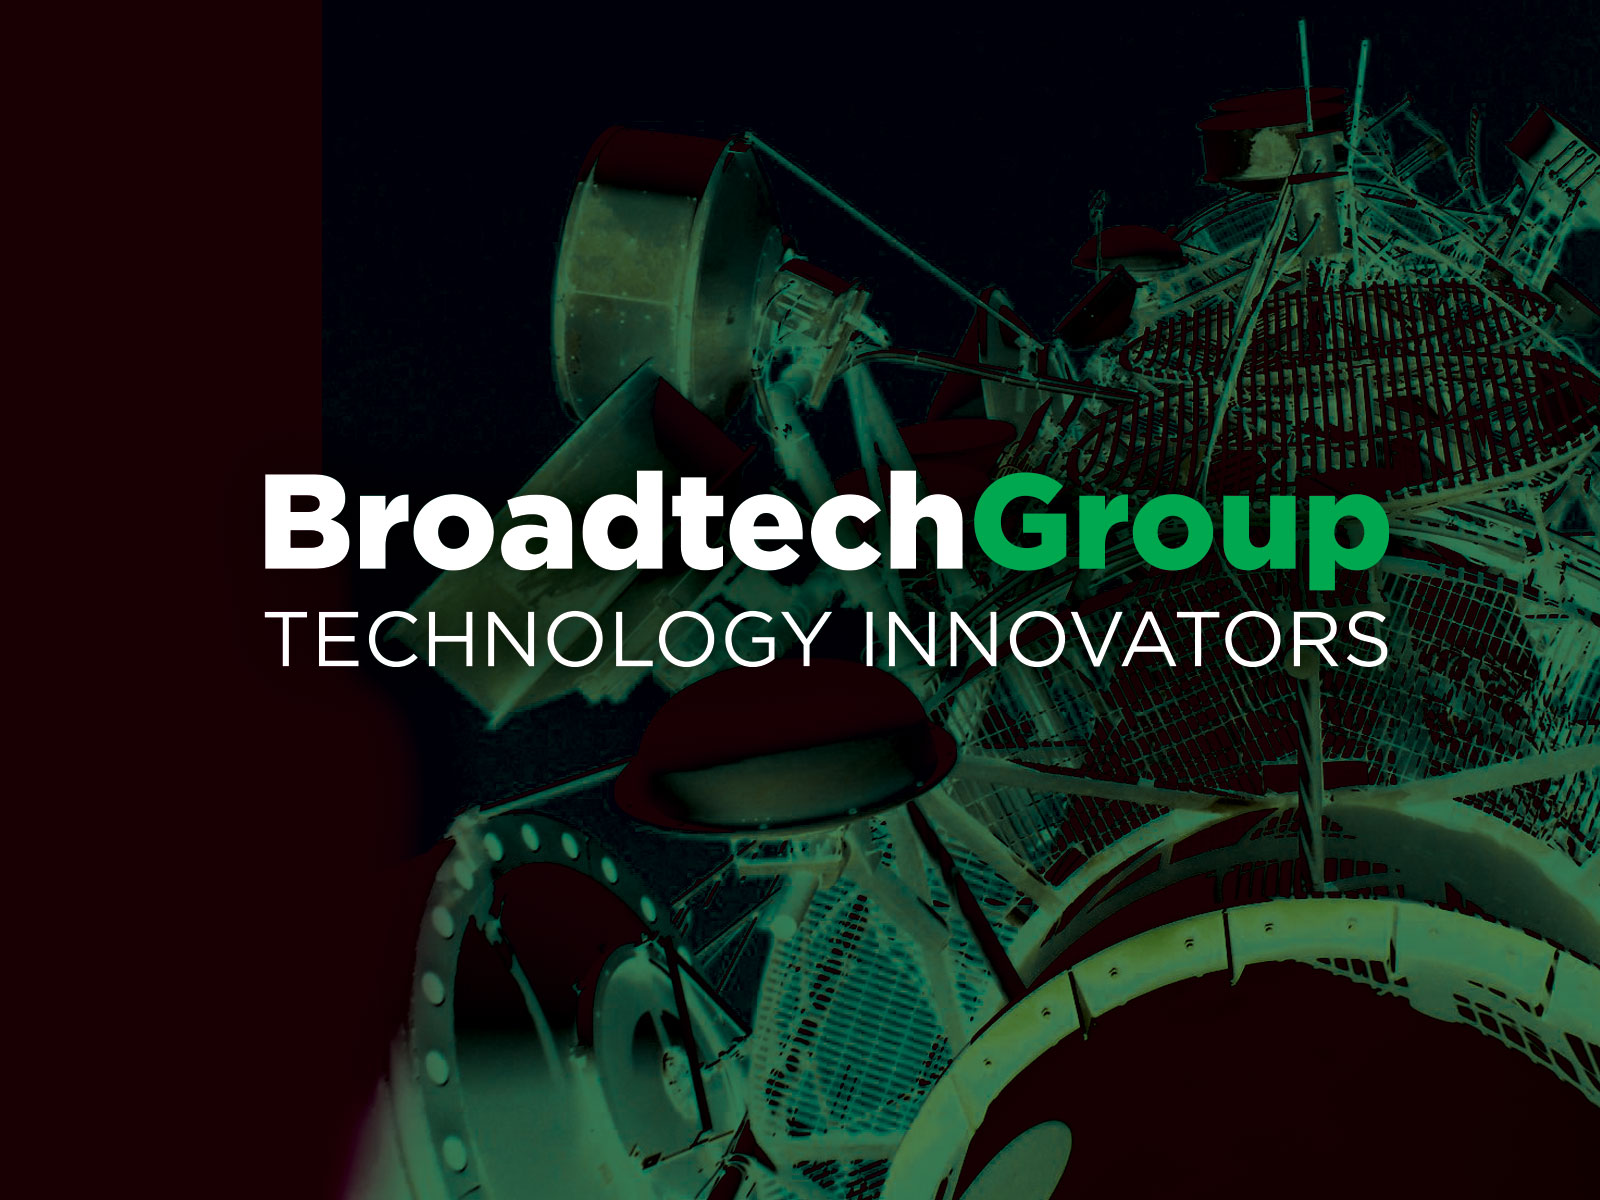 Broadtech Group Technology Innovators